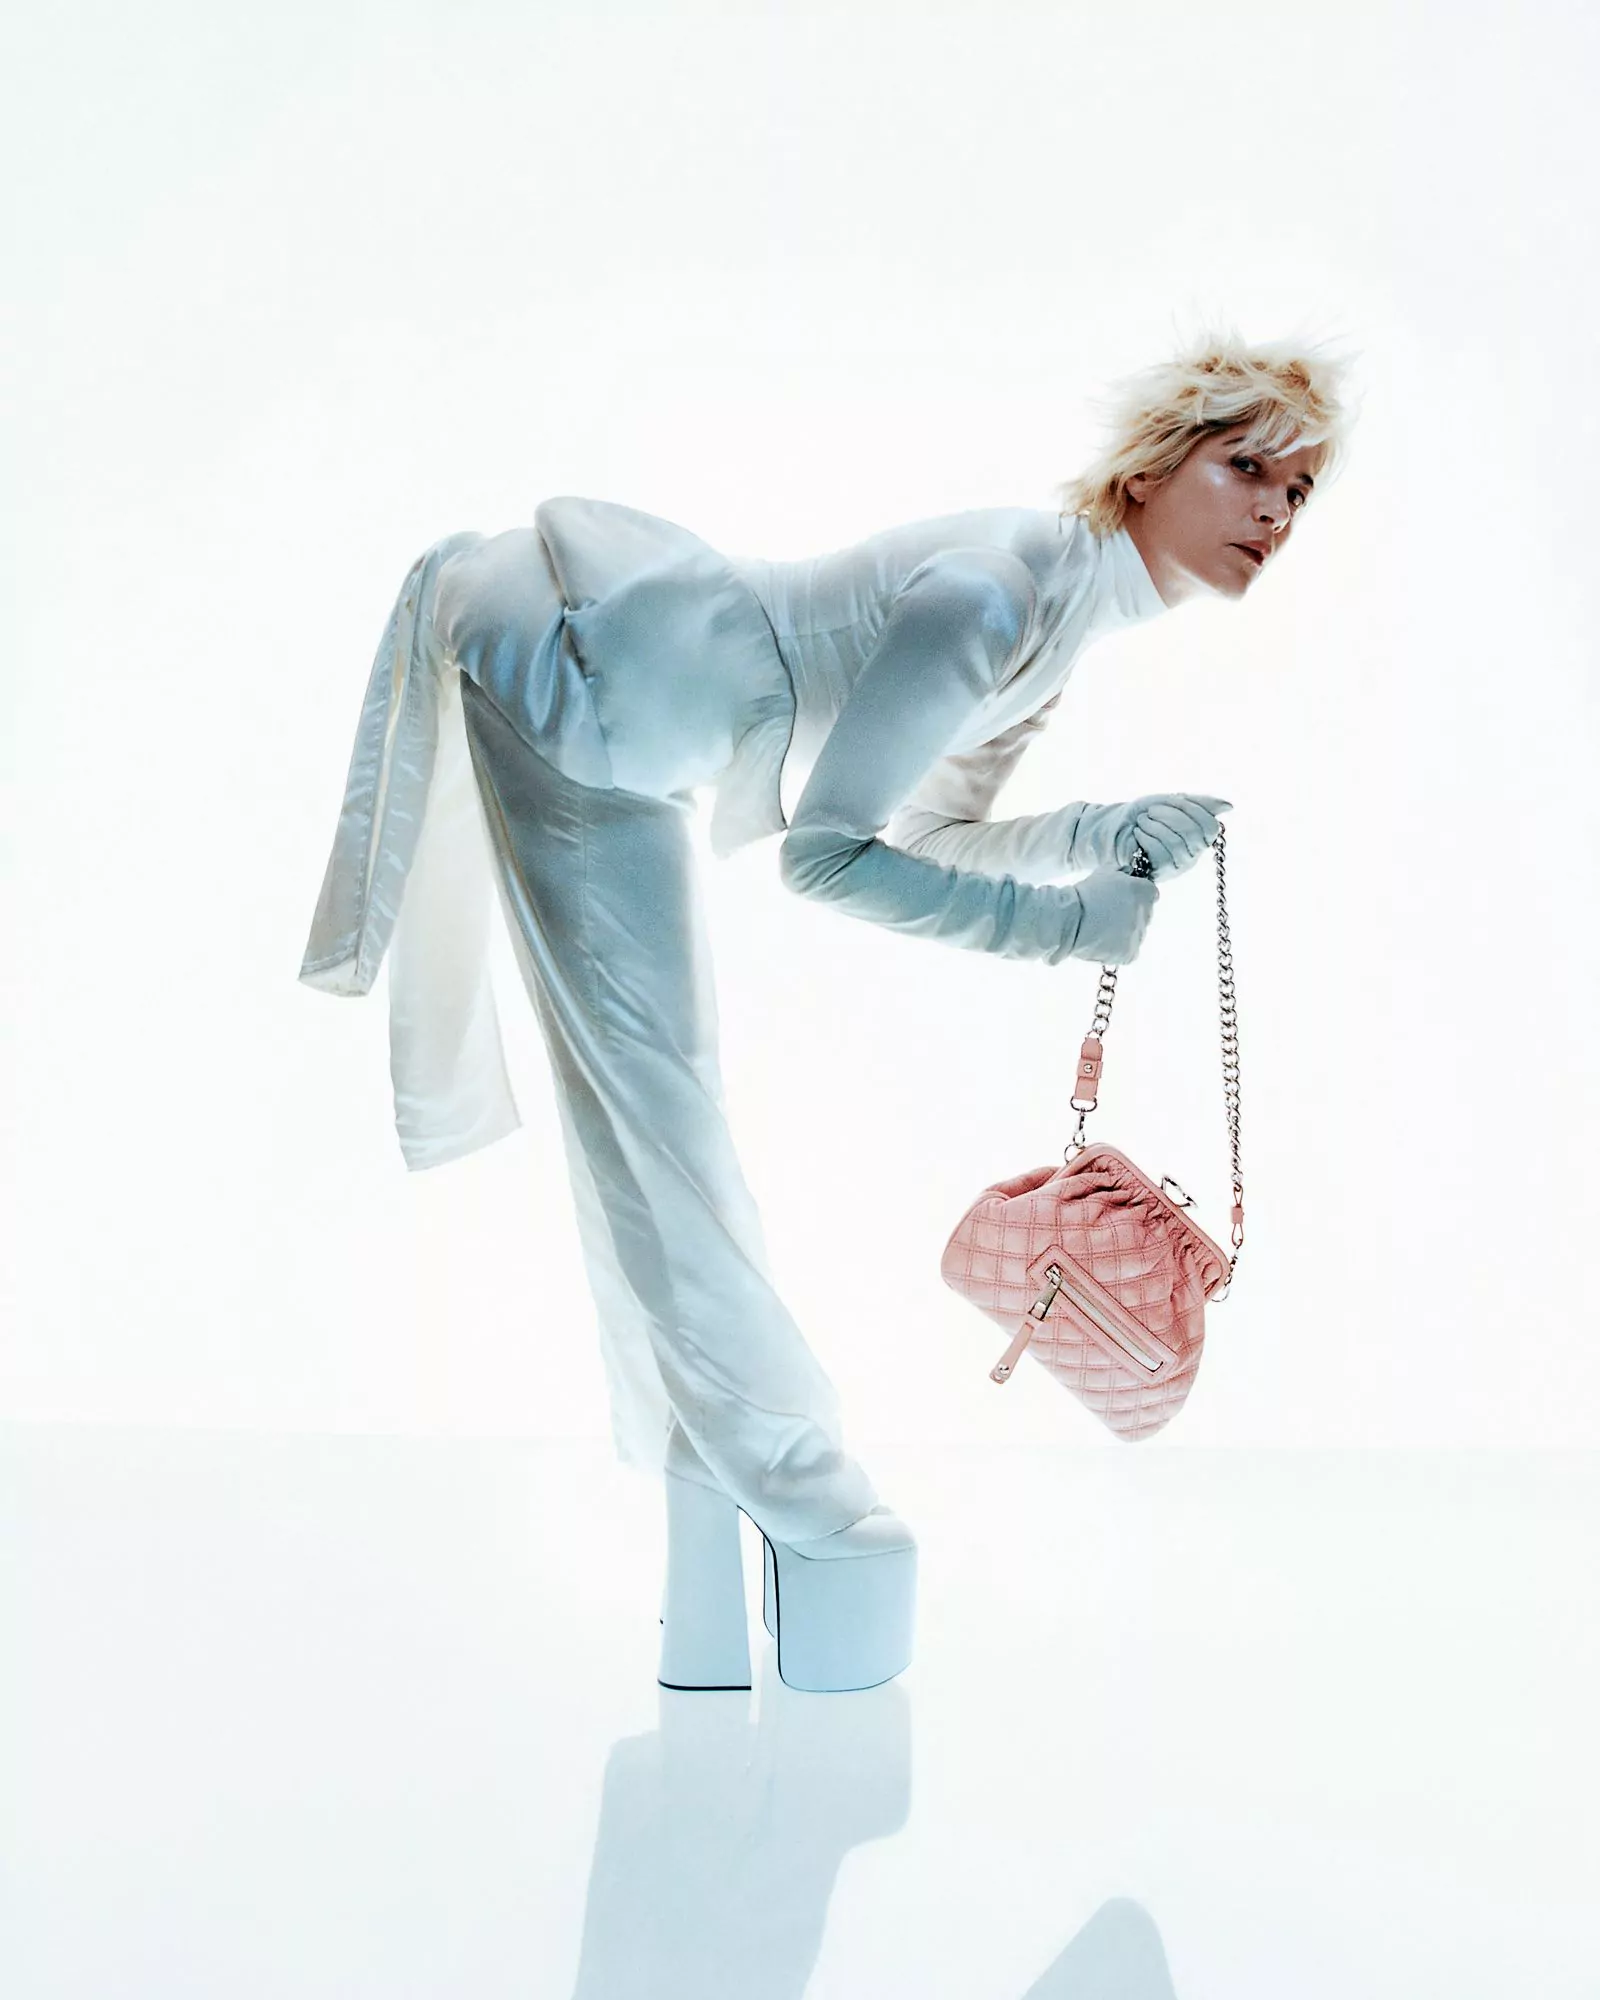 Сельма Блэр в рекламной кампании сумки Stam от Marc Jacobs, 8 марта 2023 г., фото 2